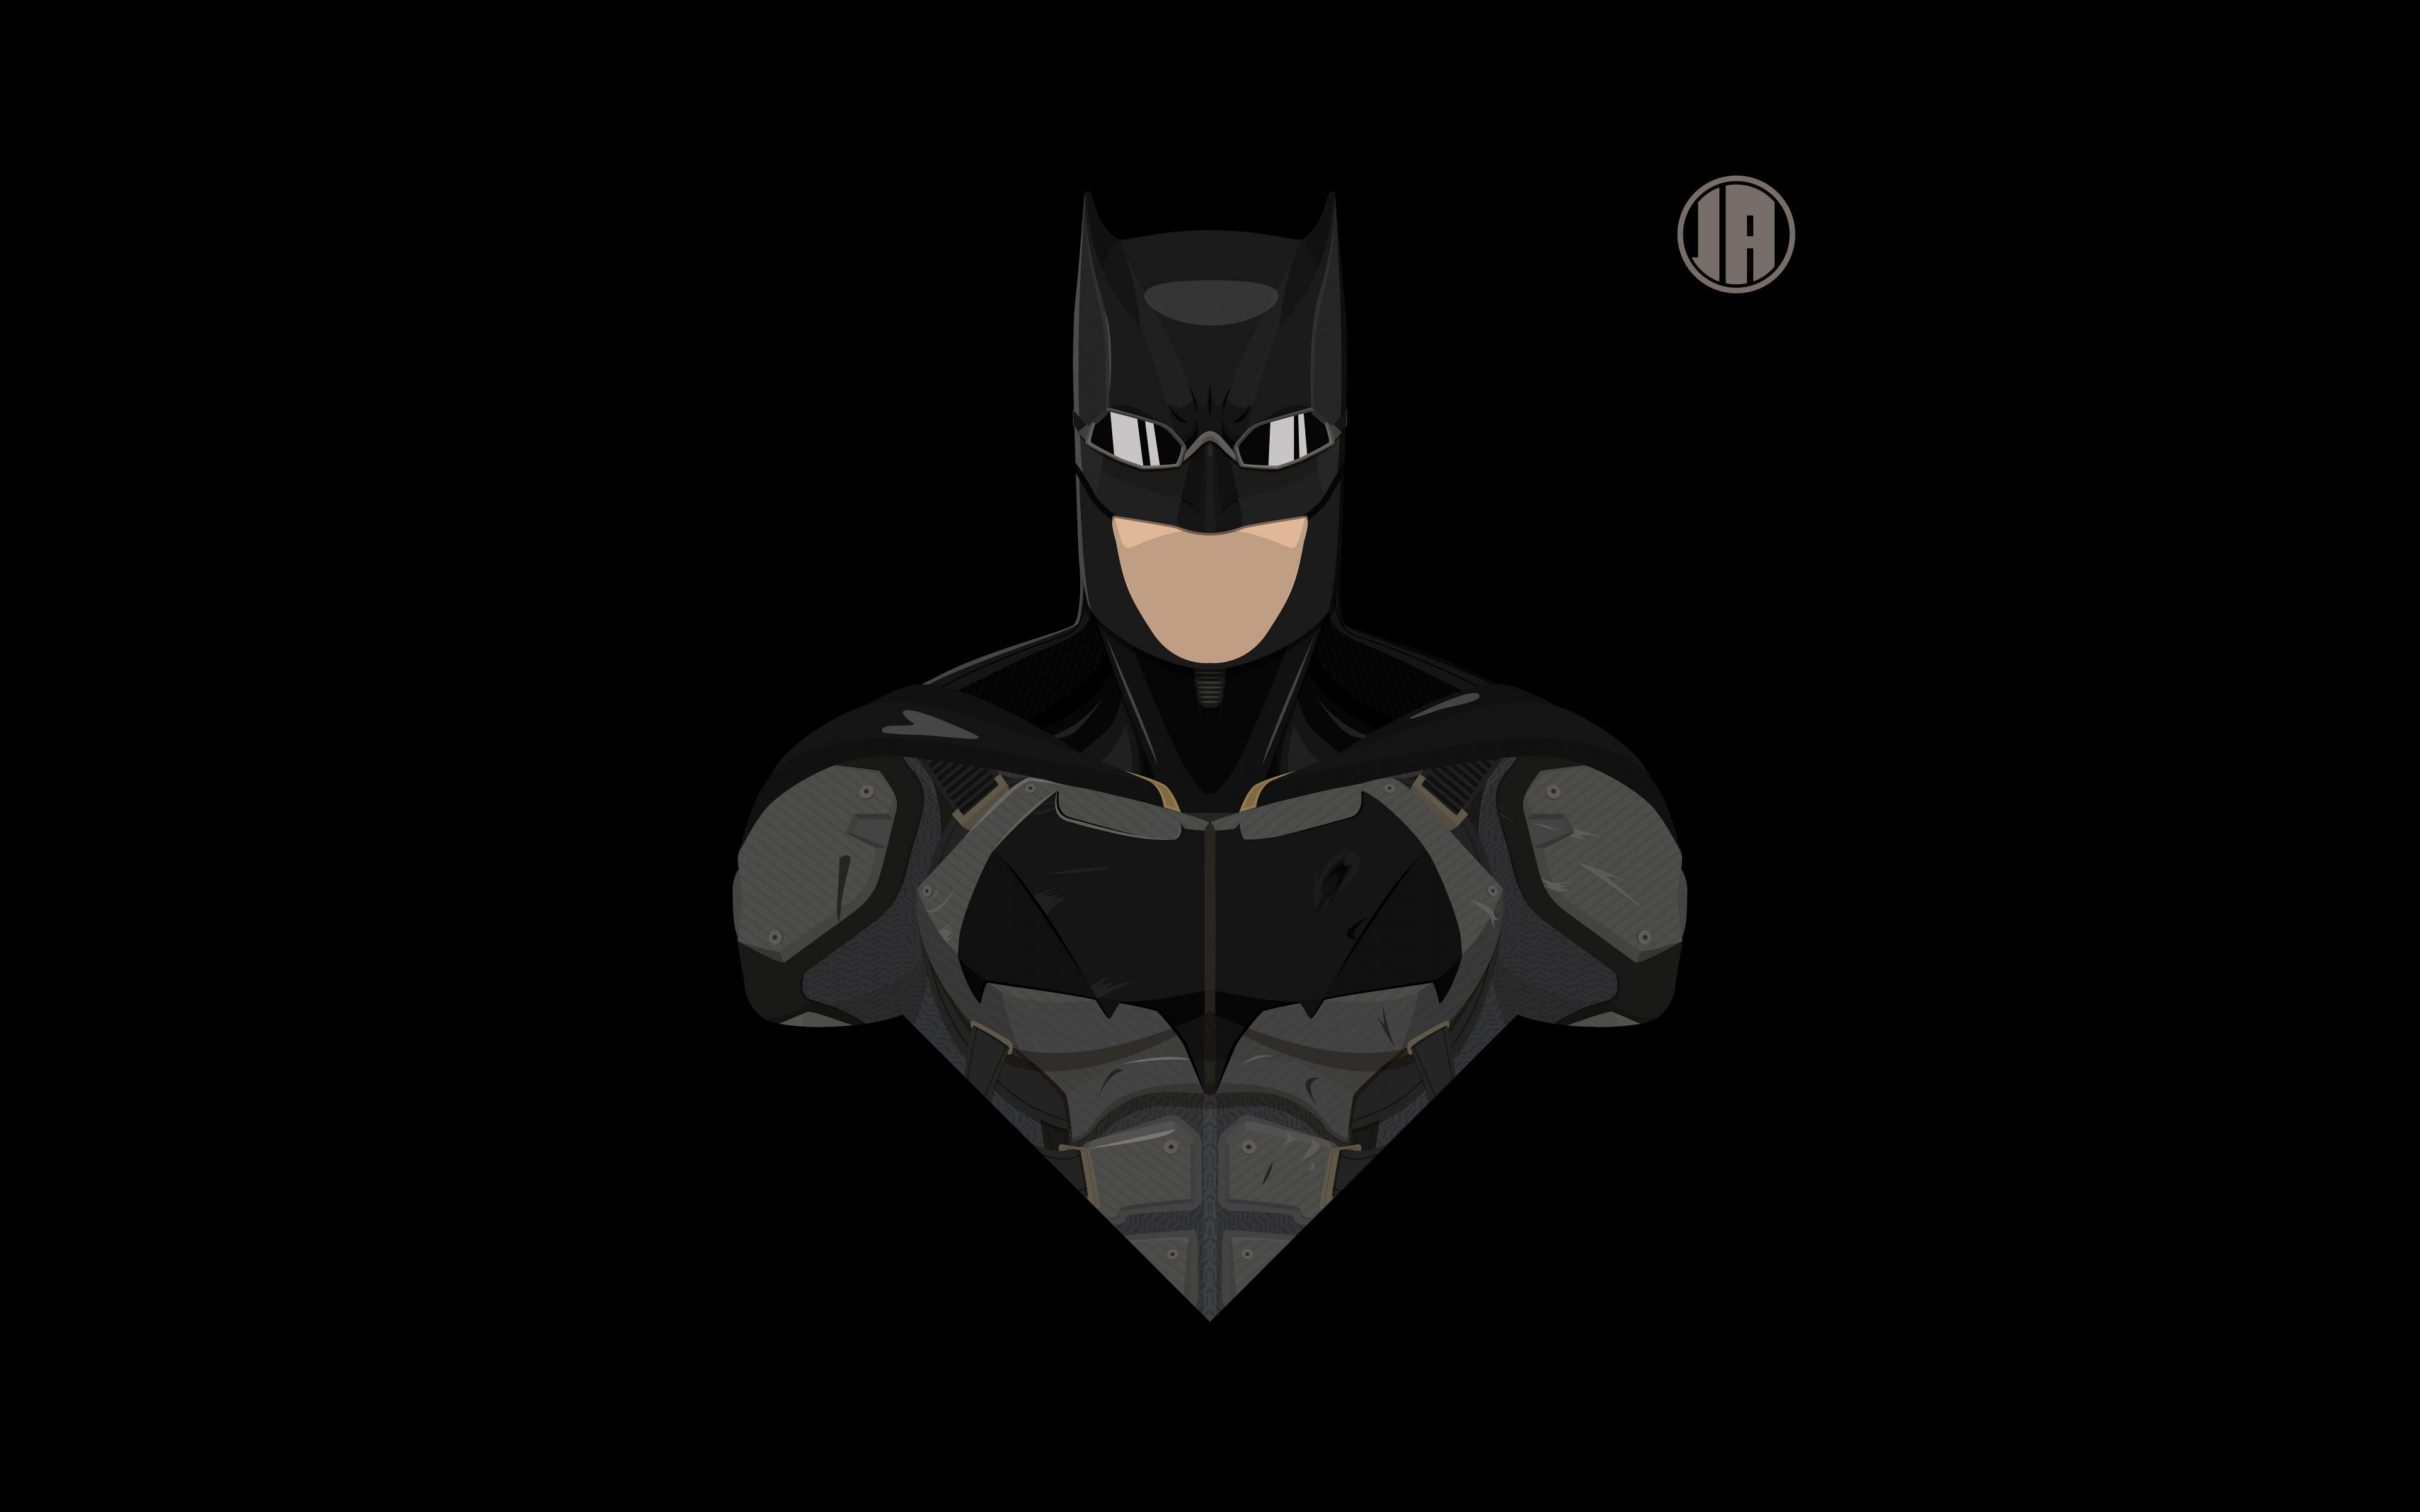 Desktop Wallpaper Batman, Superhero, Tactical Suit, Minimalism, 8k, HD Image, Picture, Background, 204f3a